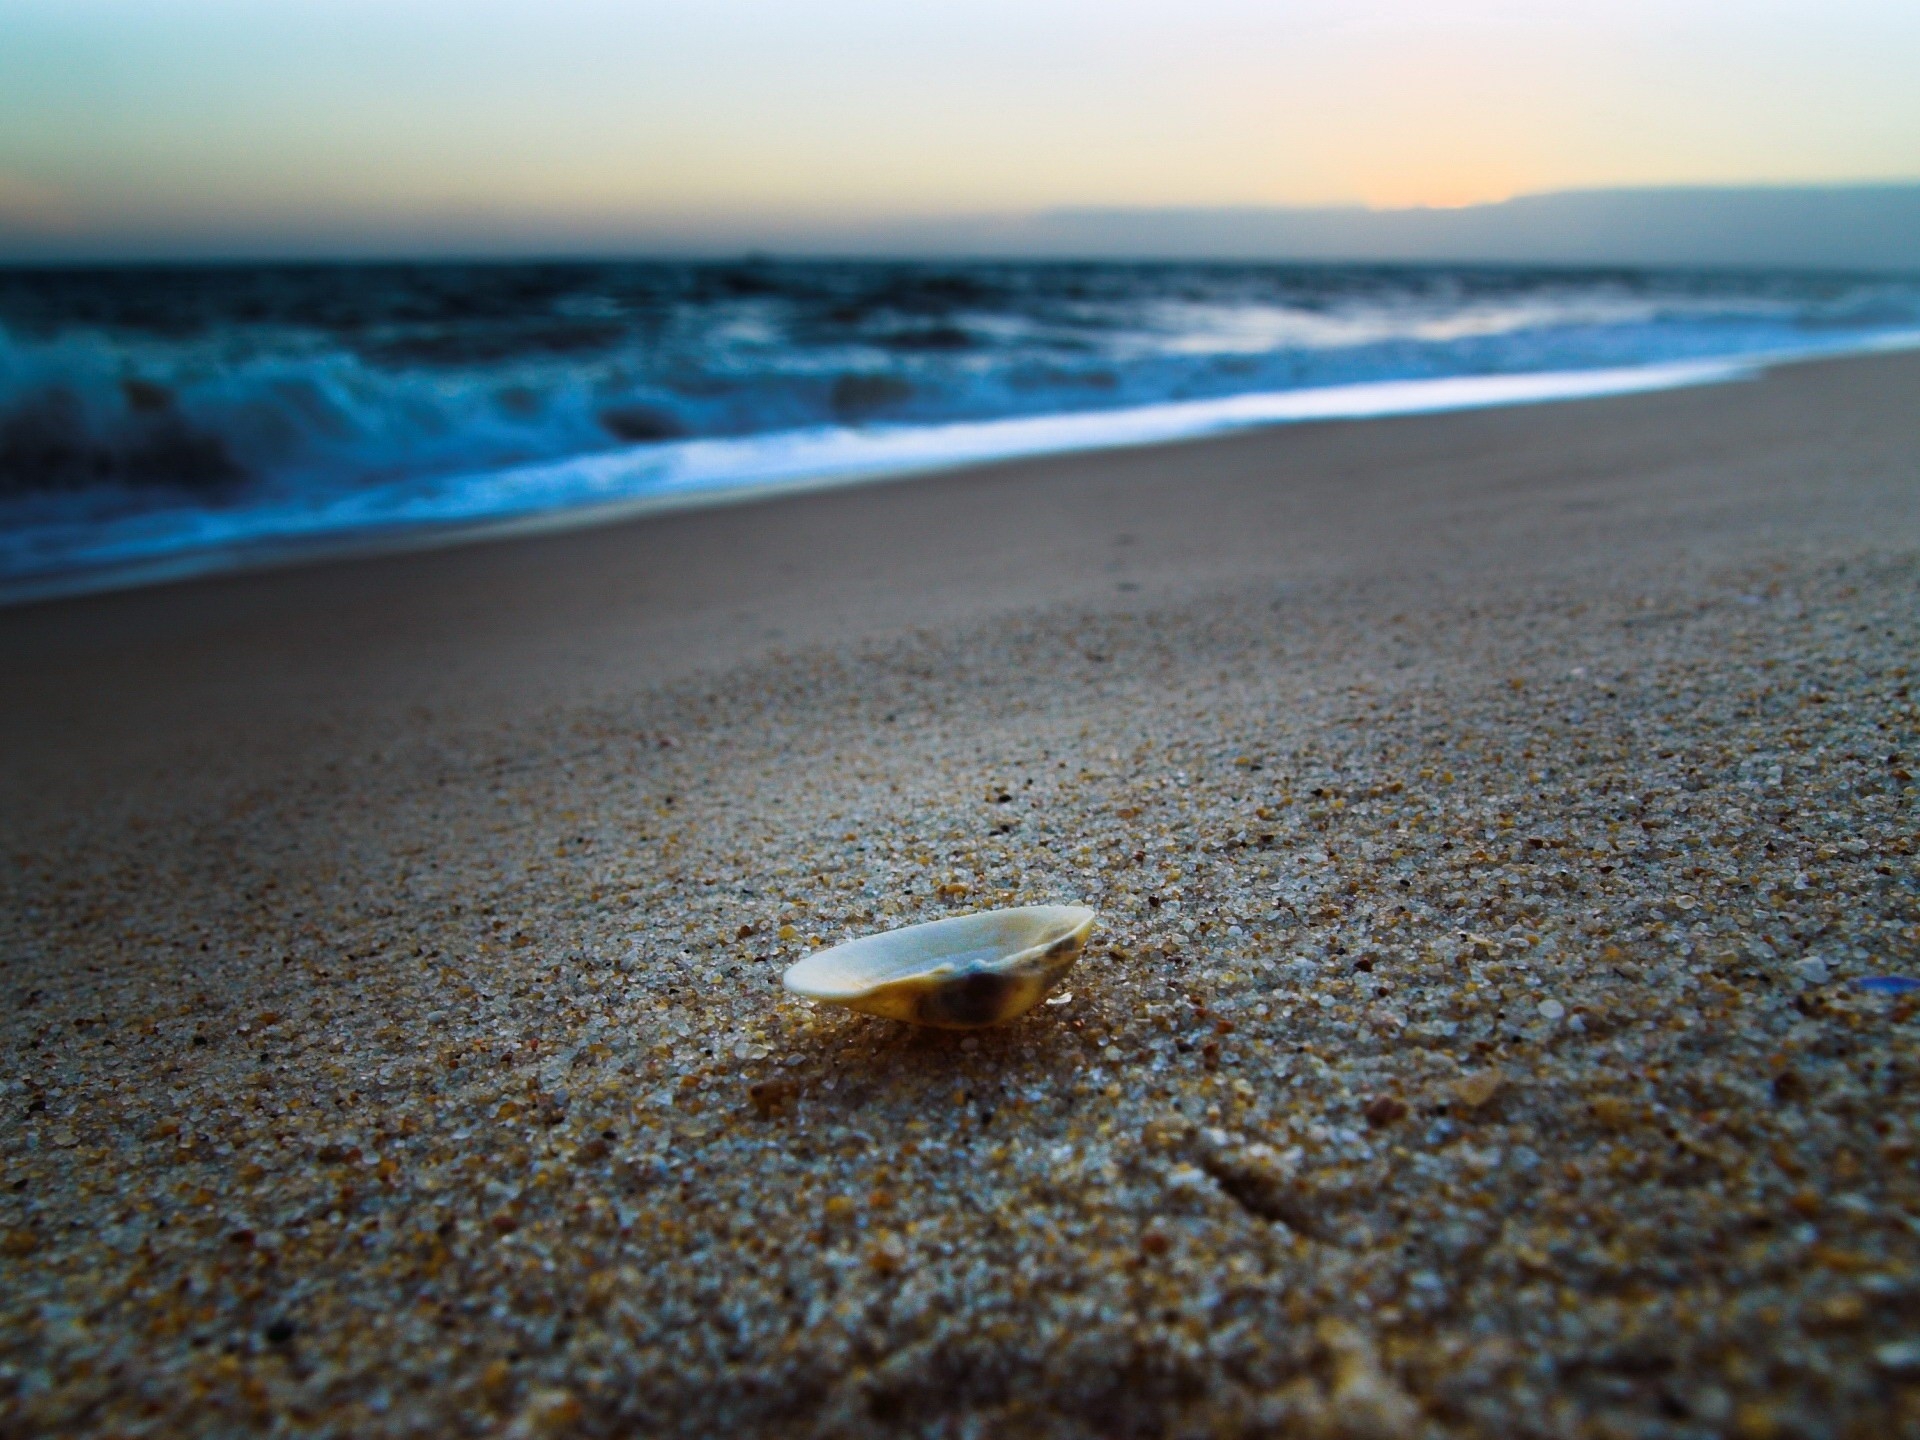 Картинка с ракушкой на песчаном побережье